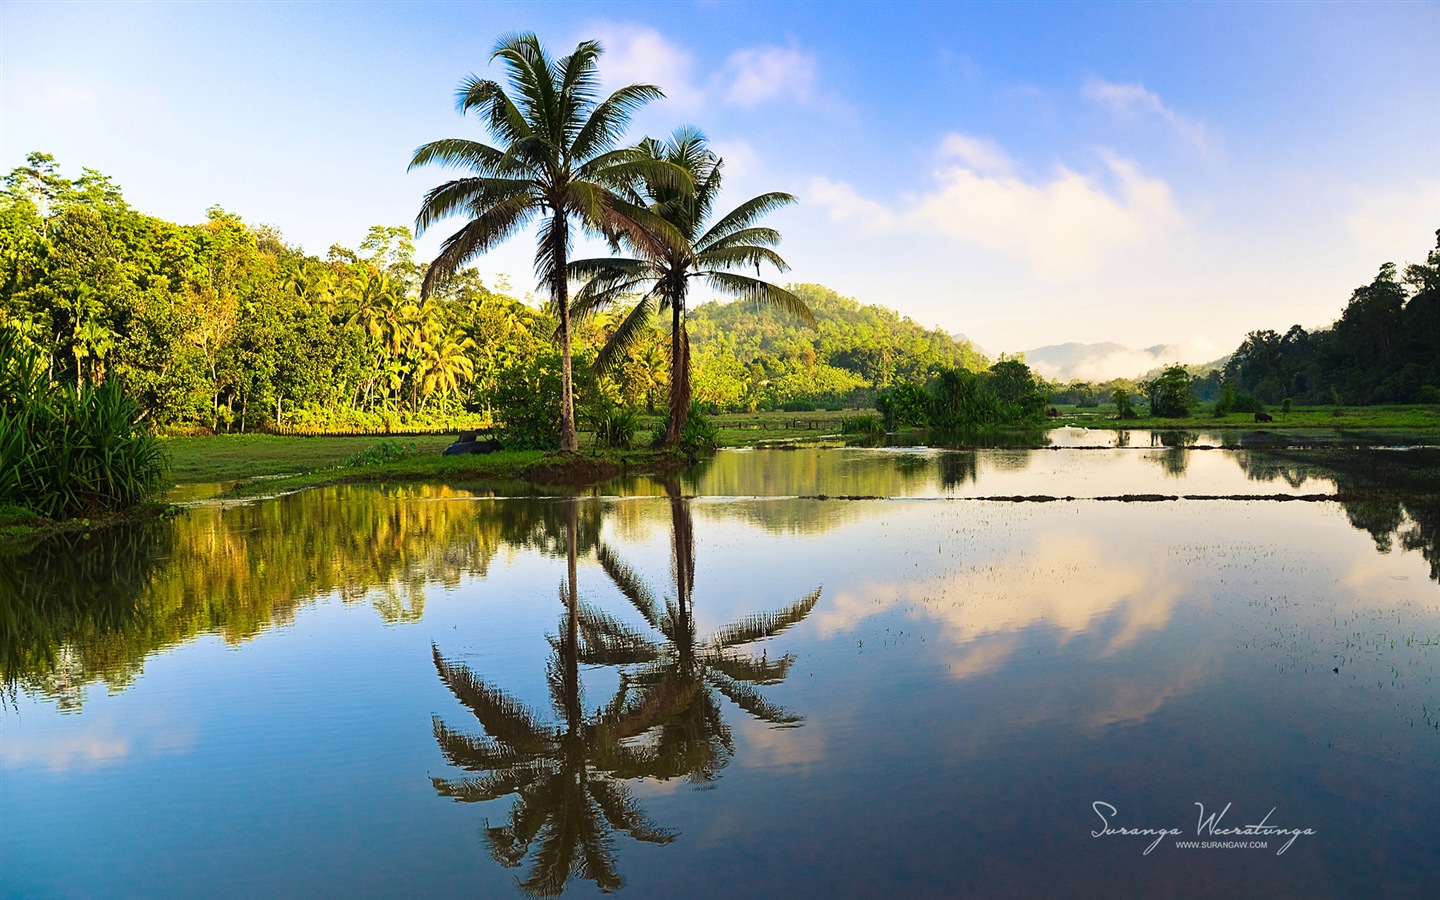 スリランカの風景のスタイル、Windowsの8テーマの壁紙 #11 - 1440x900